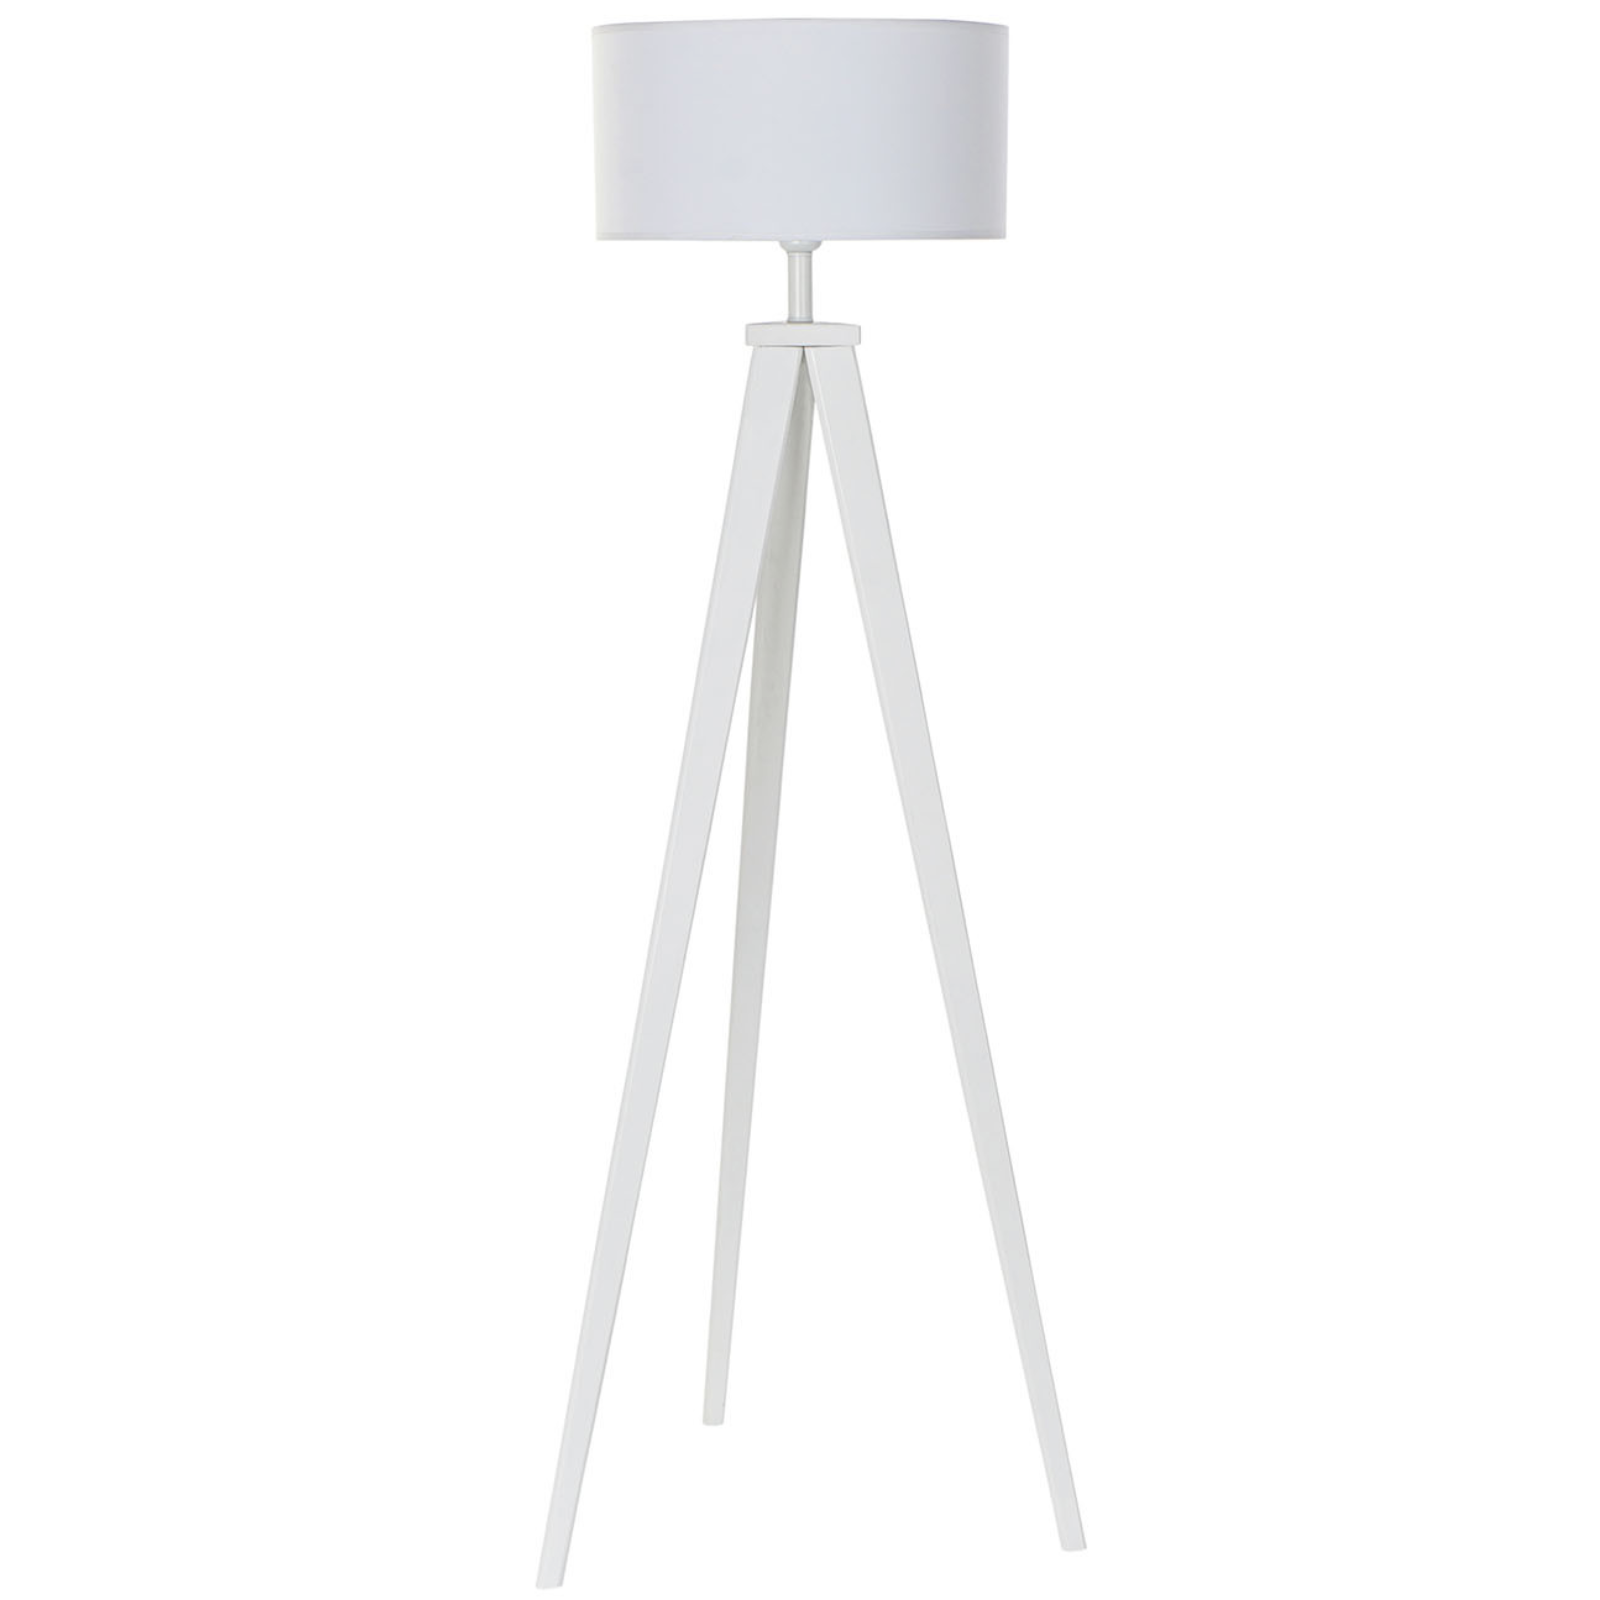 Lampada da terra treppiedi bianca "Mik" design moderno in legno con paralume in plastica